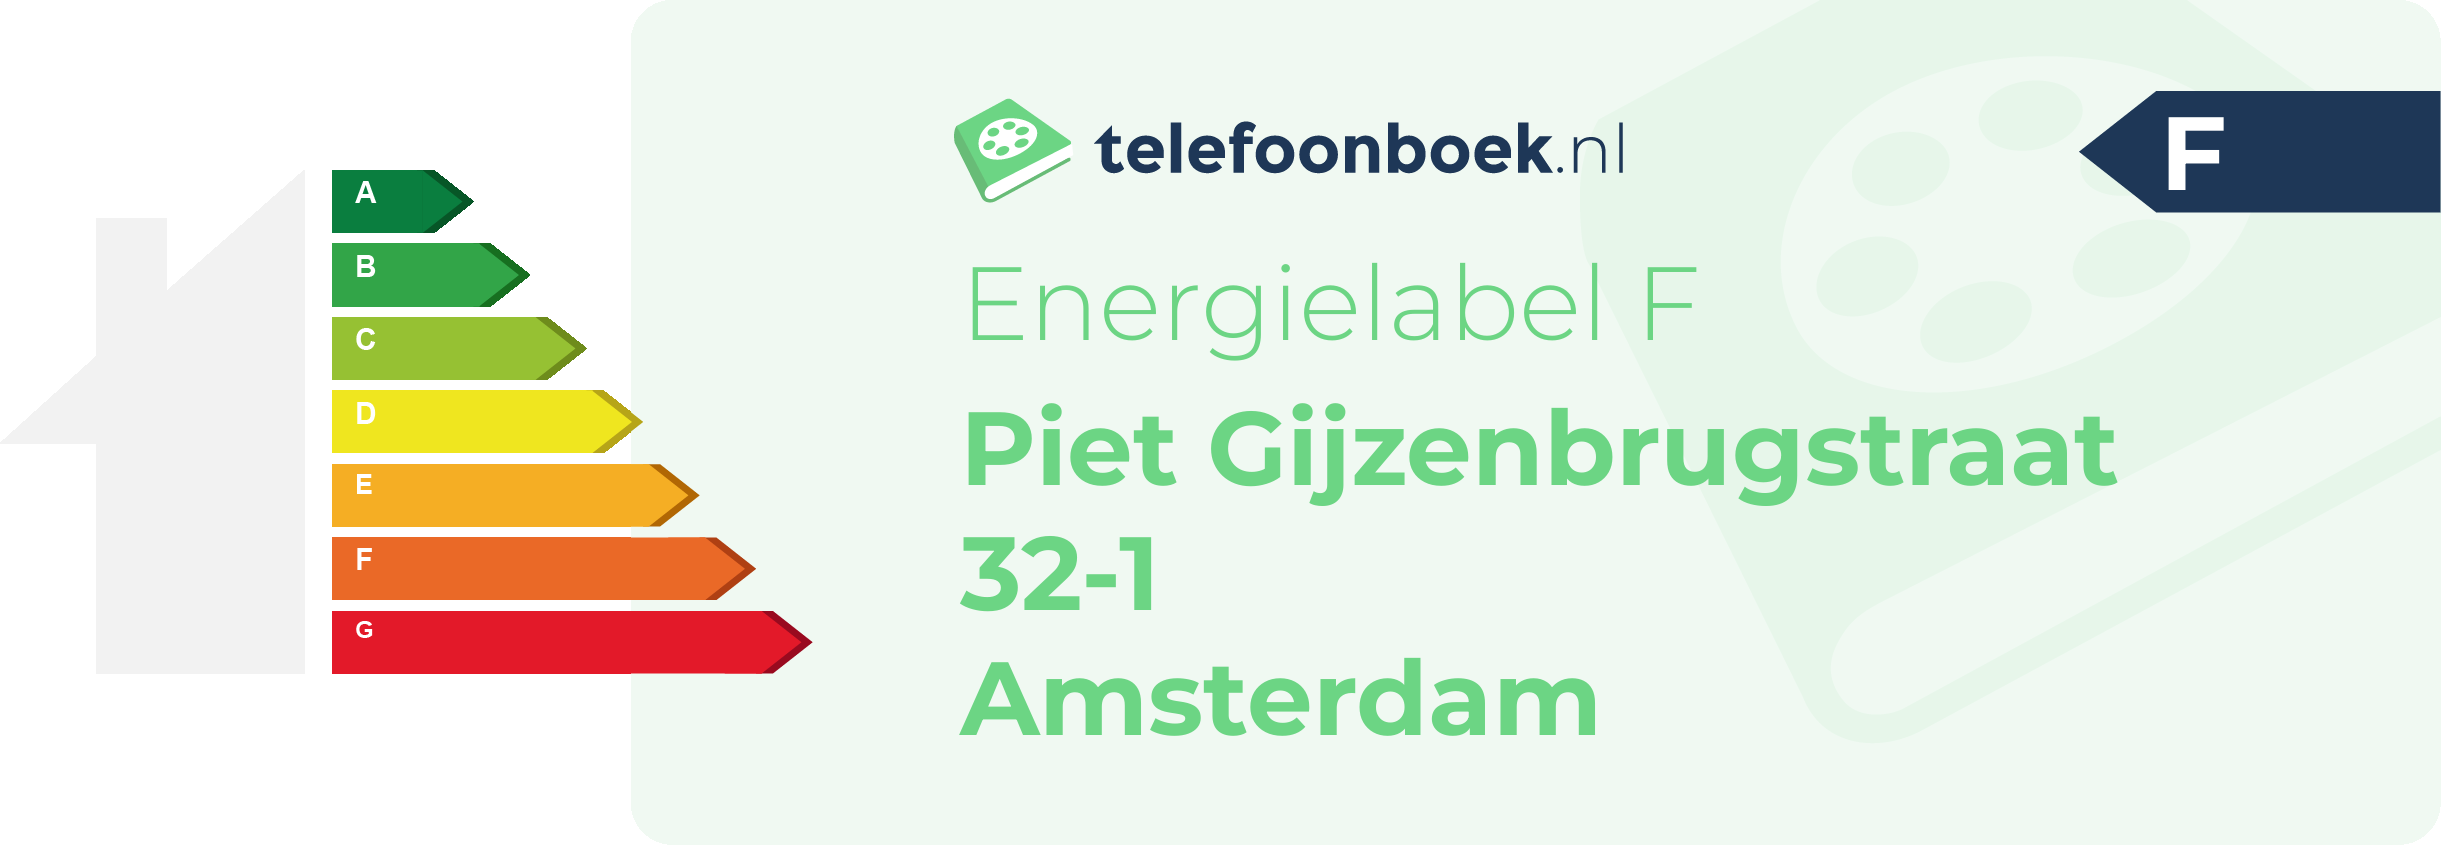 Energielabel Piet Gijzenbrugstraat 32-1 Amsterdam